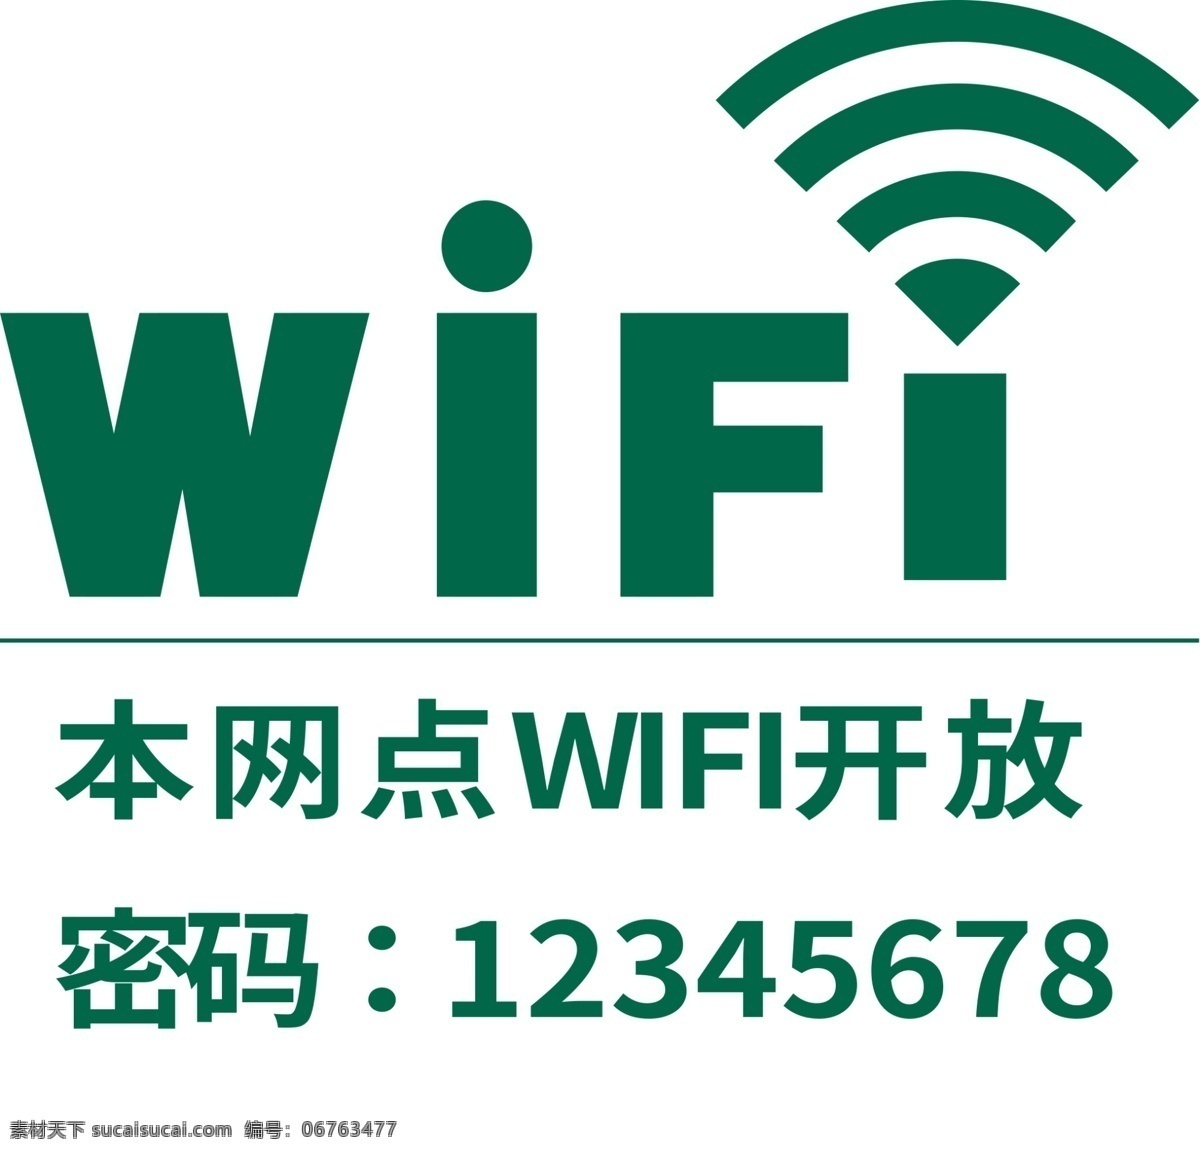 无线 wifi 标志 wifi标志 图标 广告 招牌 华为 标 标志图标 账号密码 wifi区域 无线wifi 公共标识标志